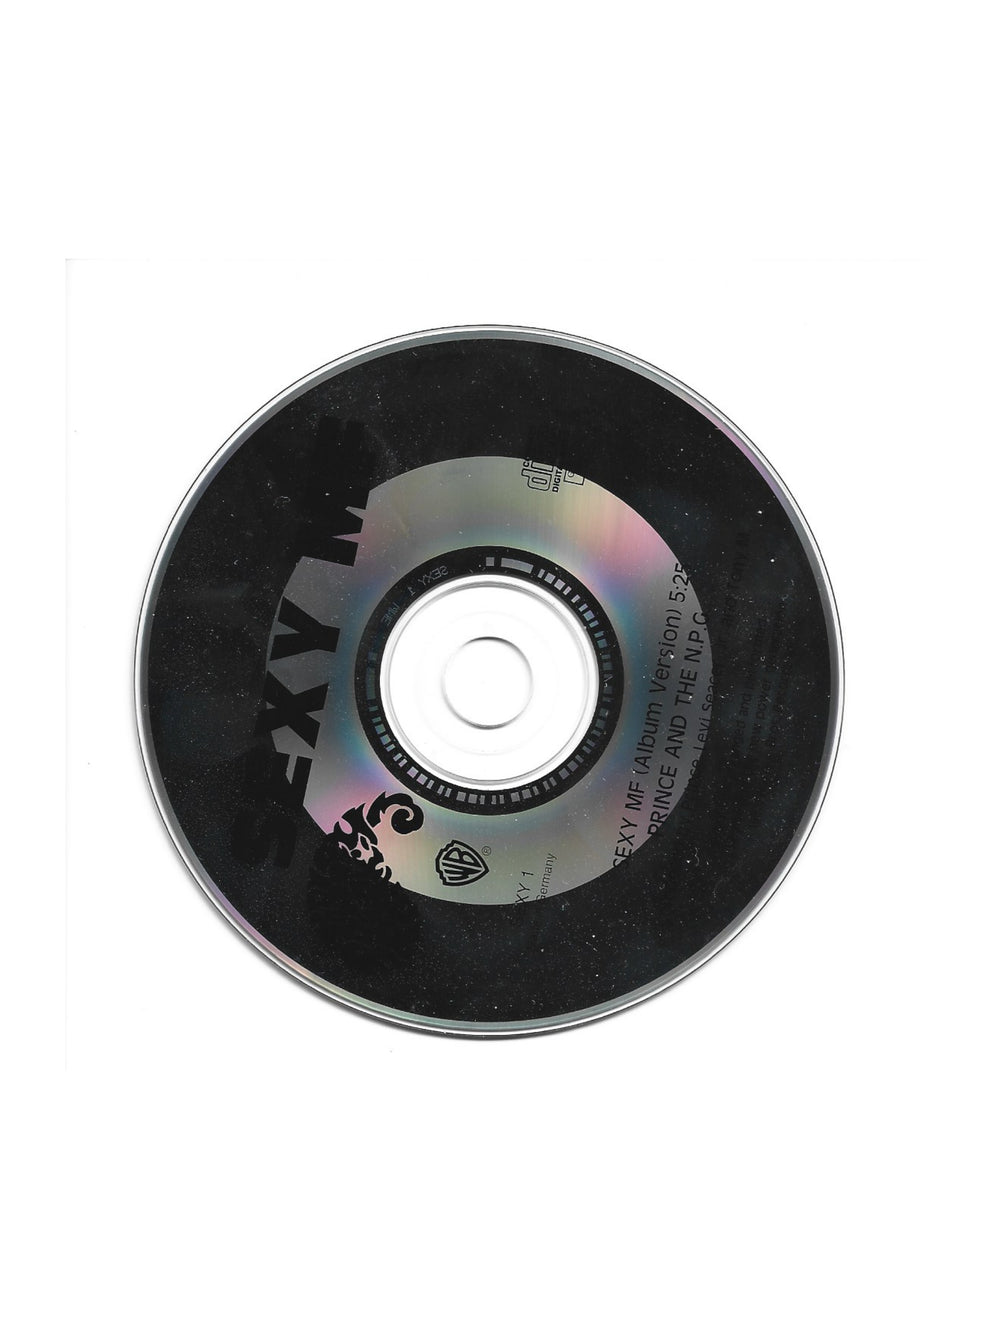 Prince 0(+> – Sexy MF CD Promo NPG Records Preloved: 1992